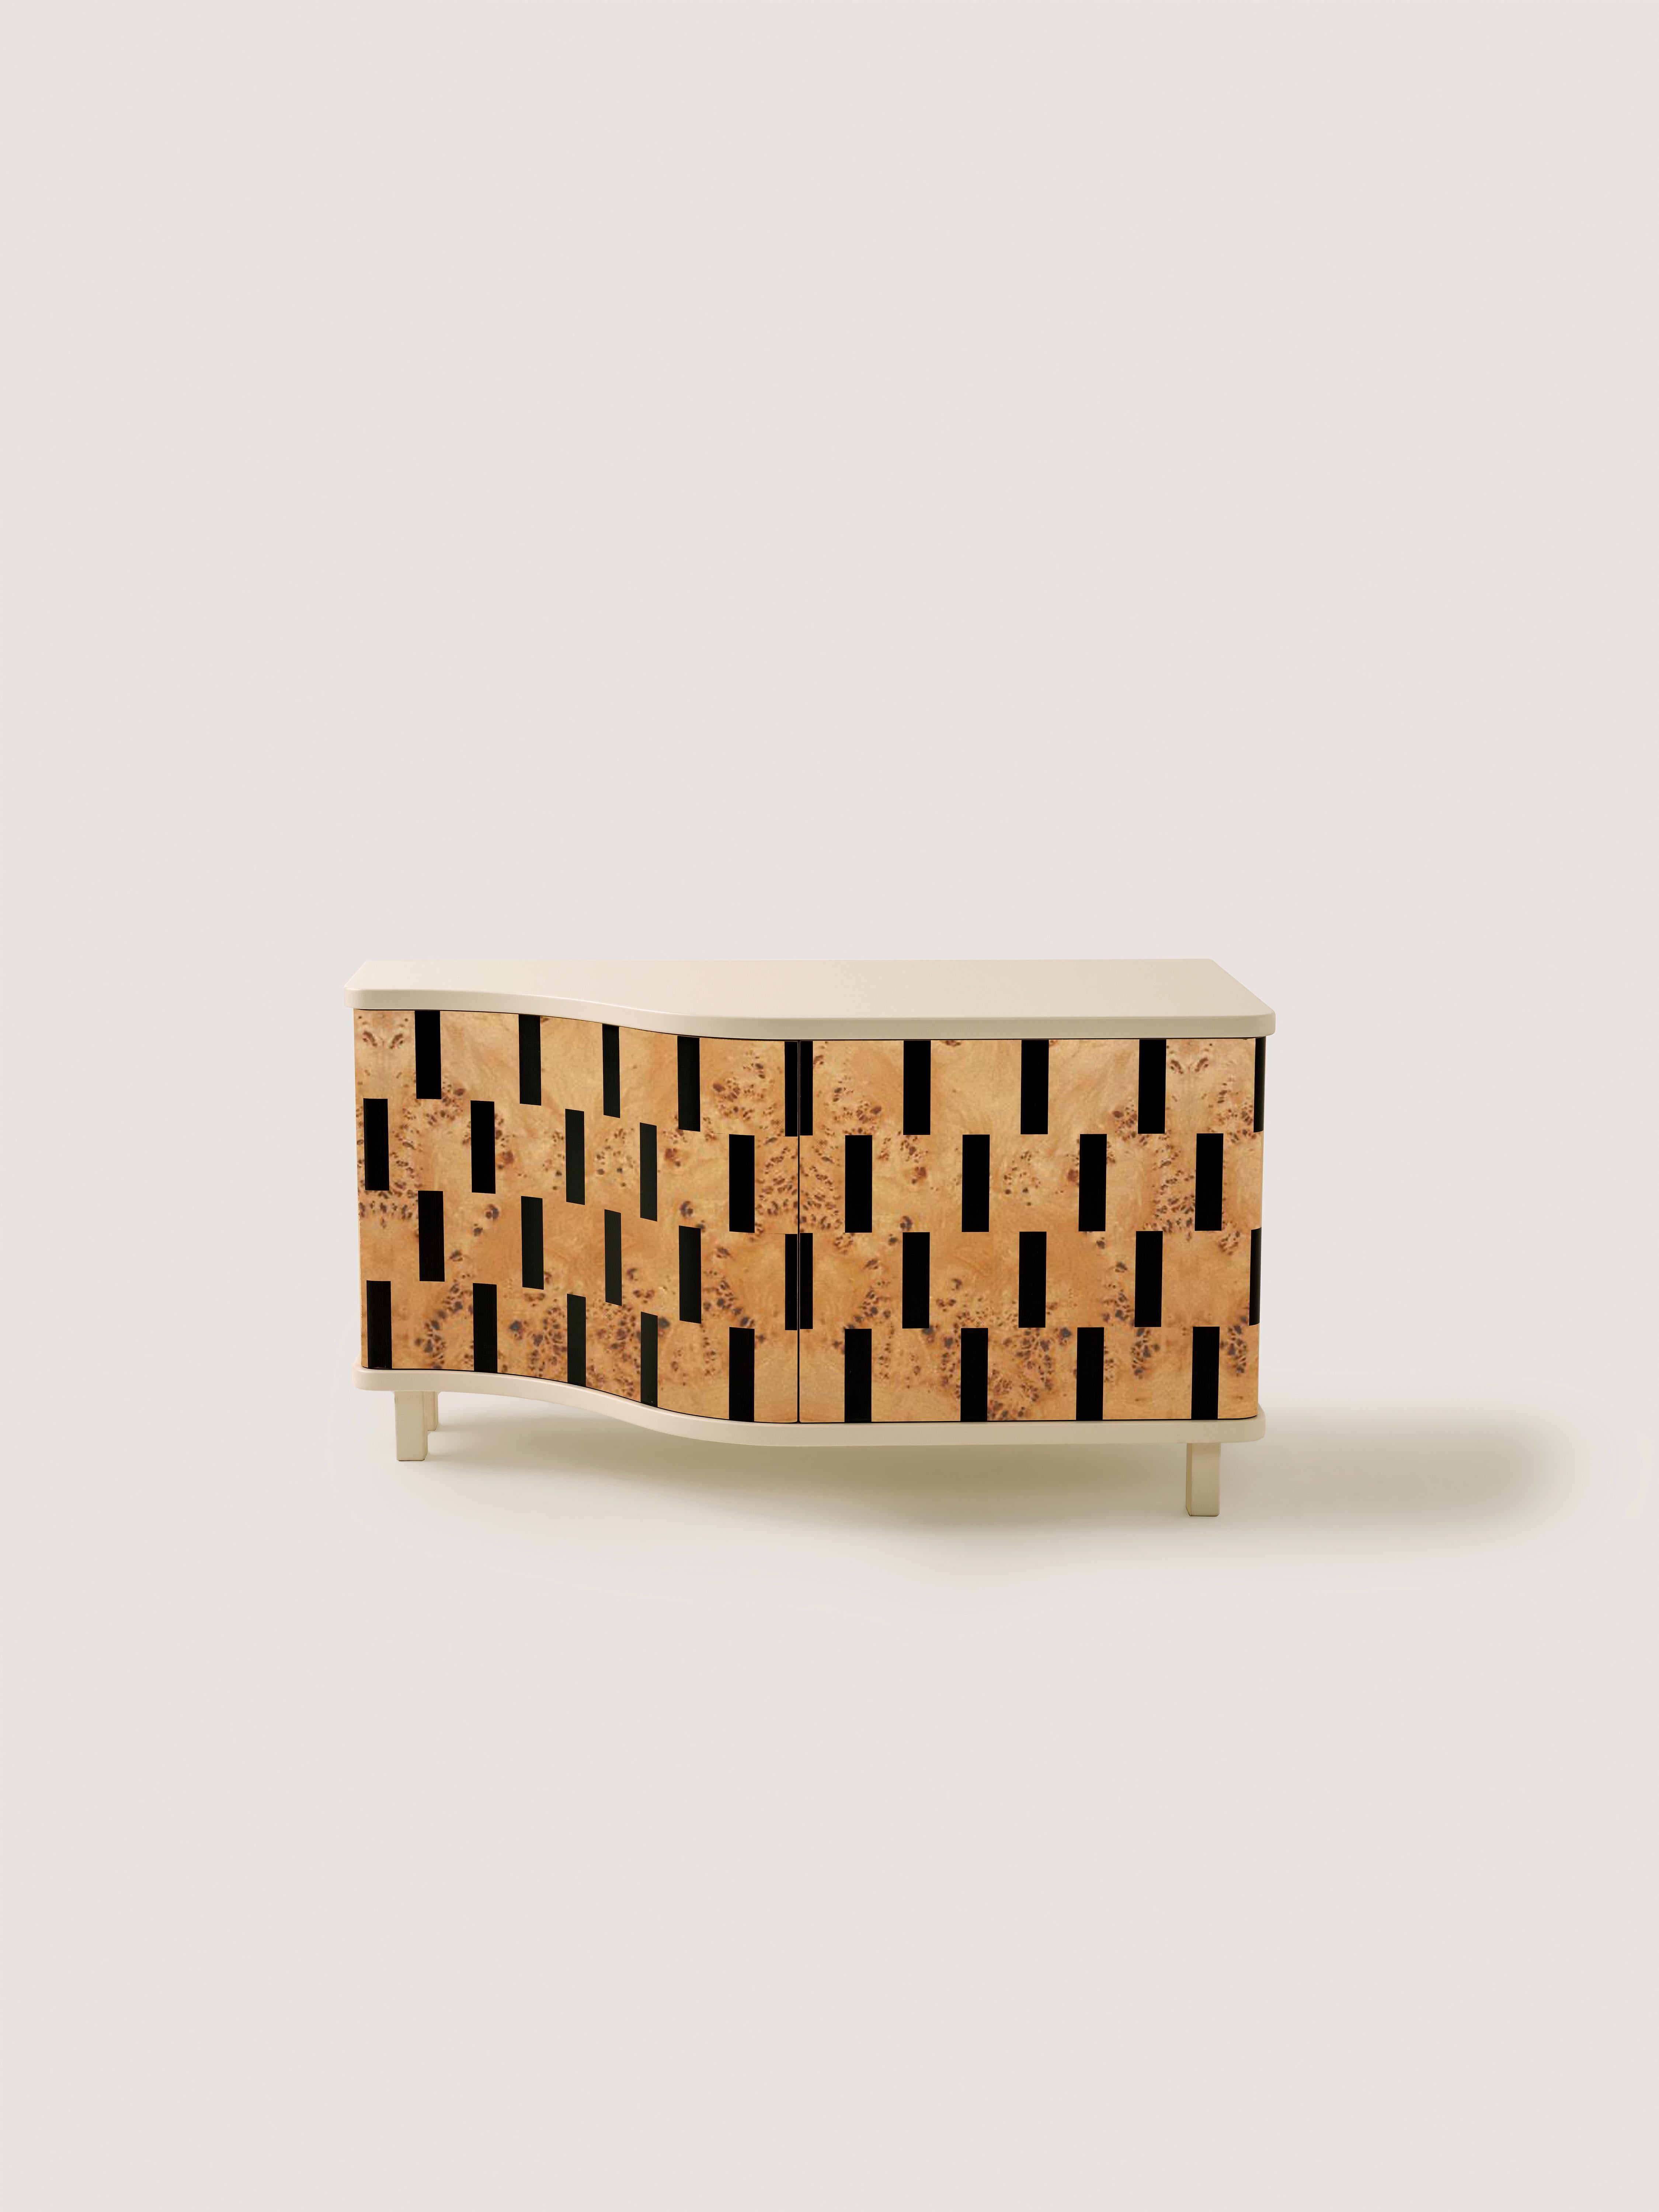 Cette crédence exclusive a été conçue à l'origine comme un meuble à chaussures sur mesure. Il est créé de manière unique en assemblant des pièces géométriques rayées en placage de bois, créant ainsi une illusion en 3D.

